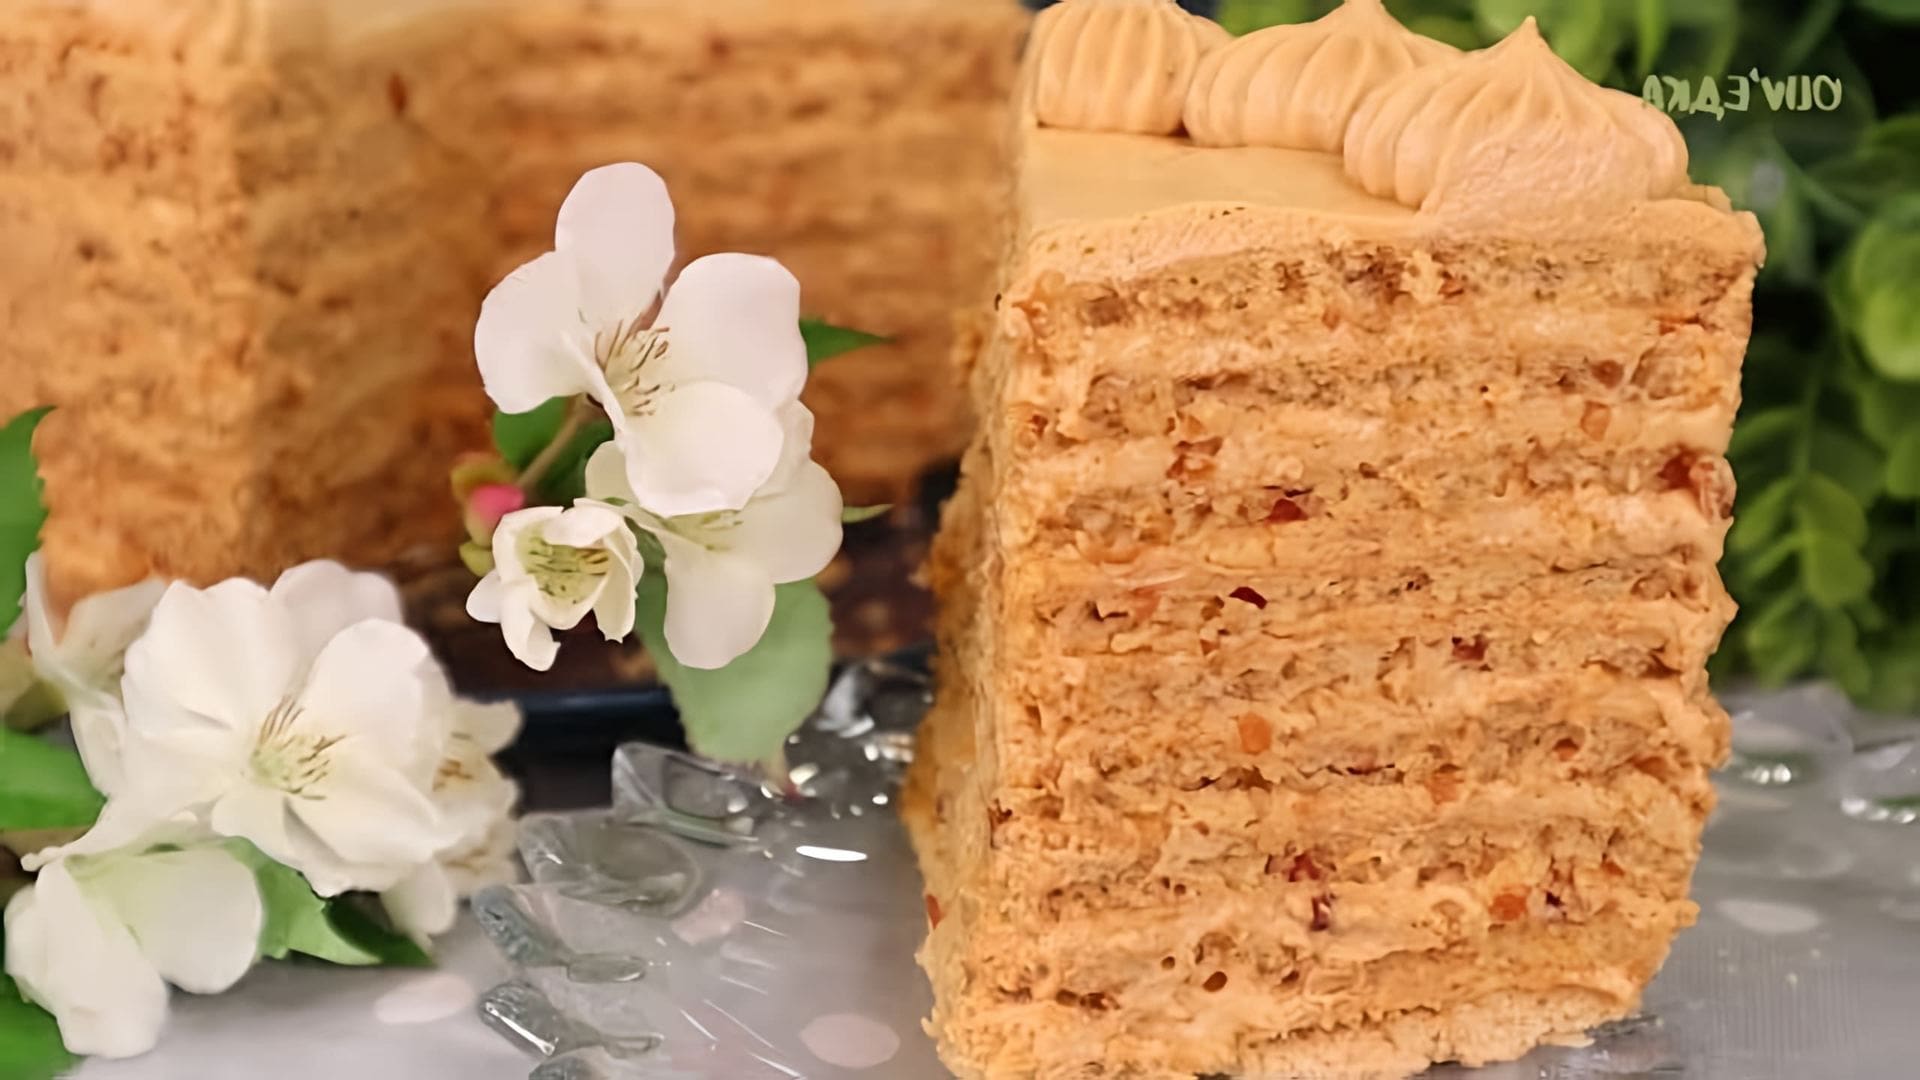 В этом видео демонстрируется рецепт приготовления торта "Коровка"